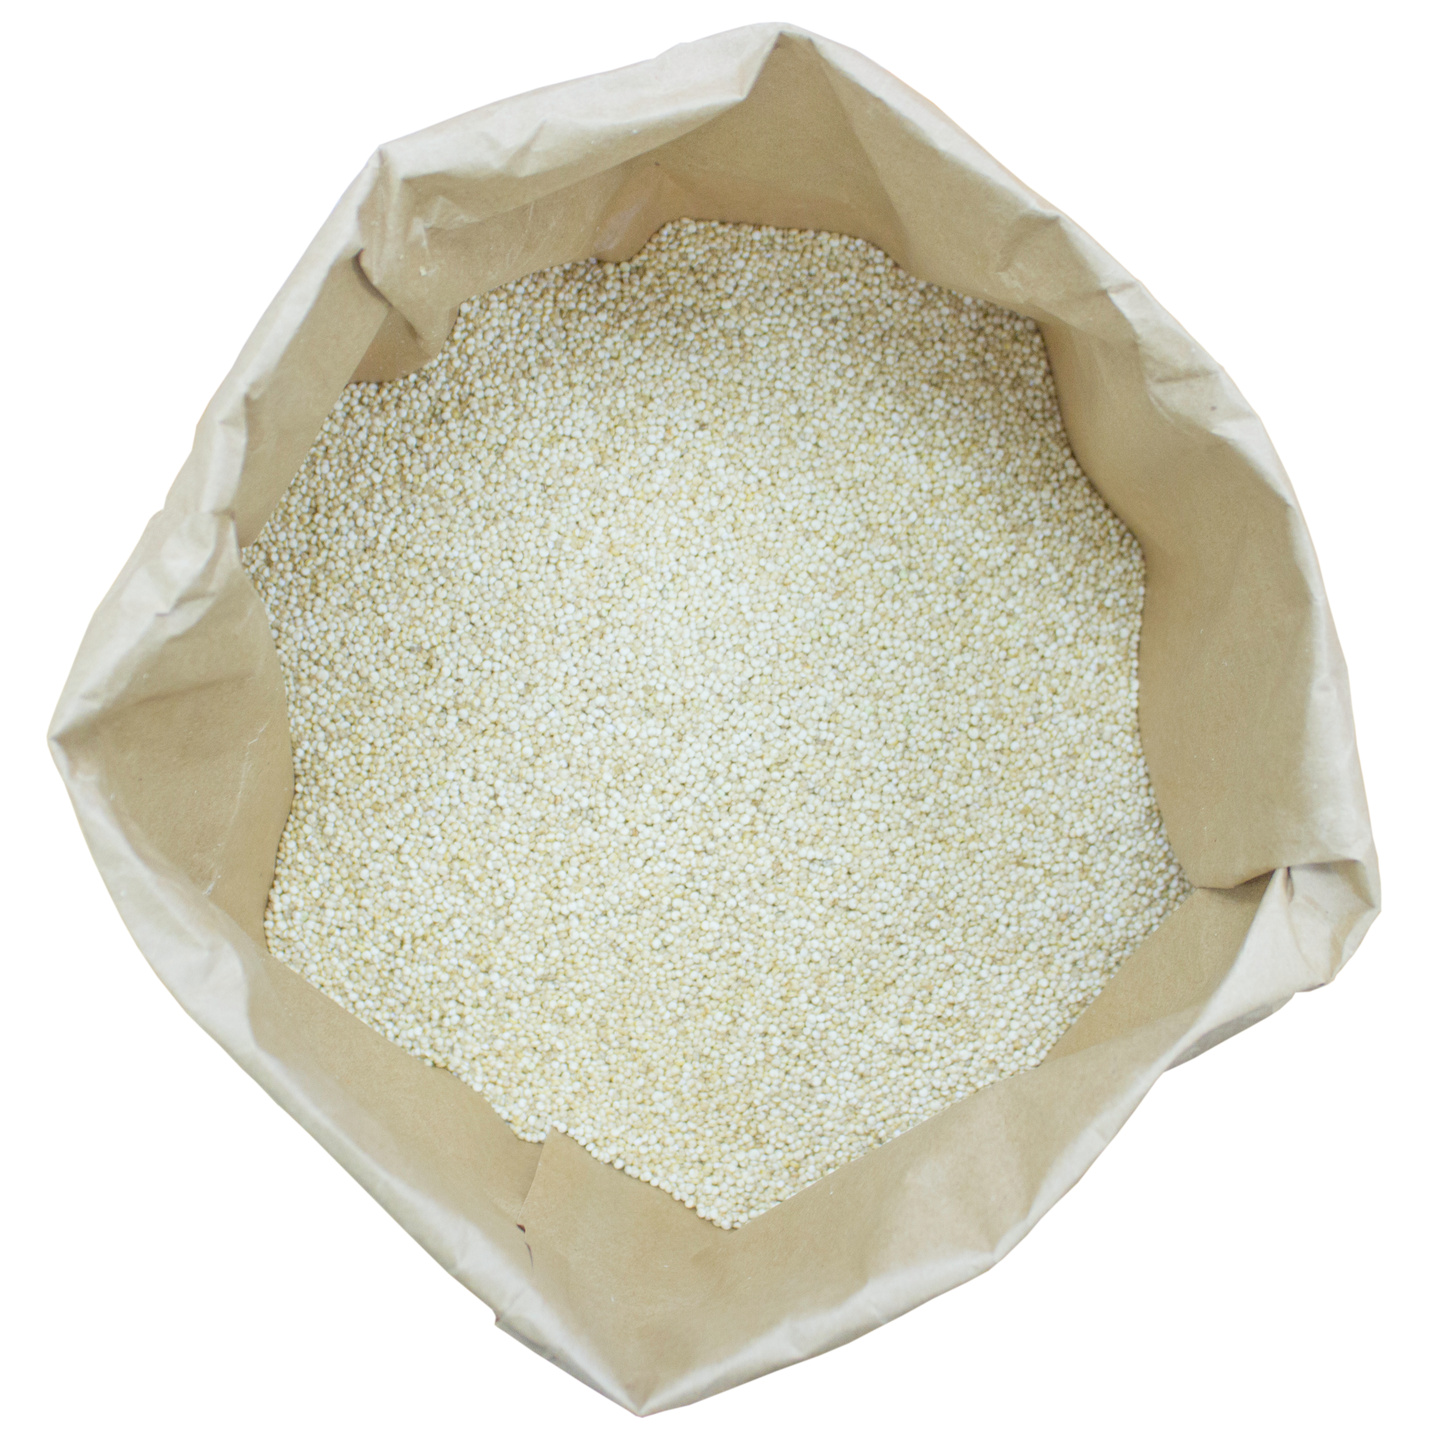 Salliselta Kvinoa valkoinen 25kg